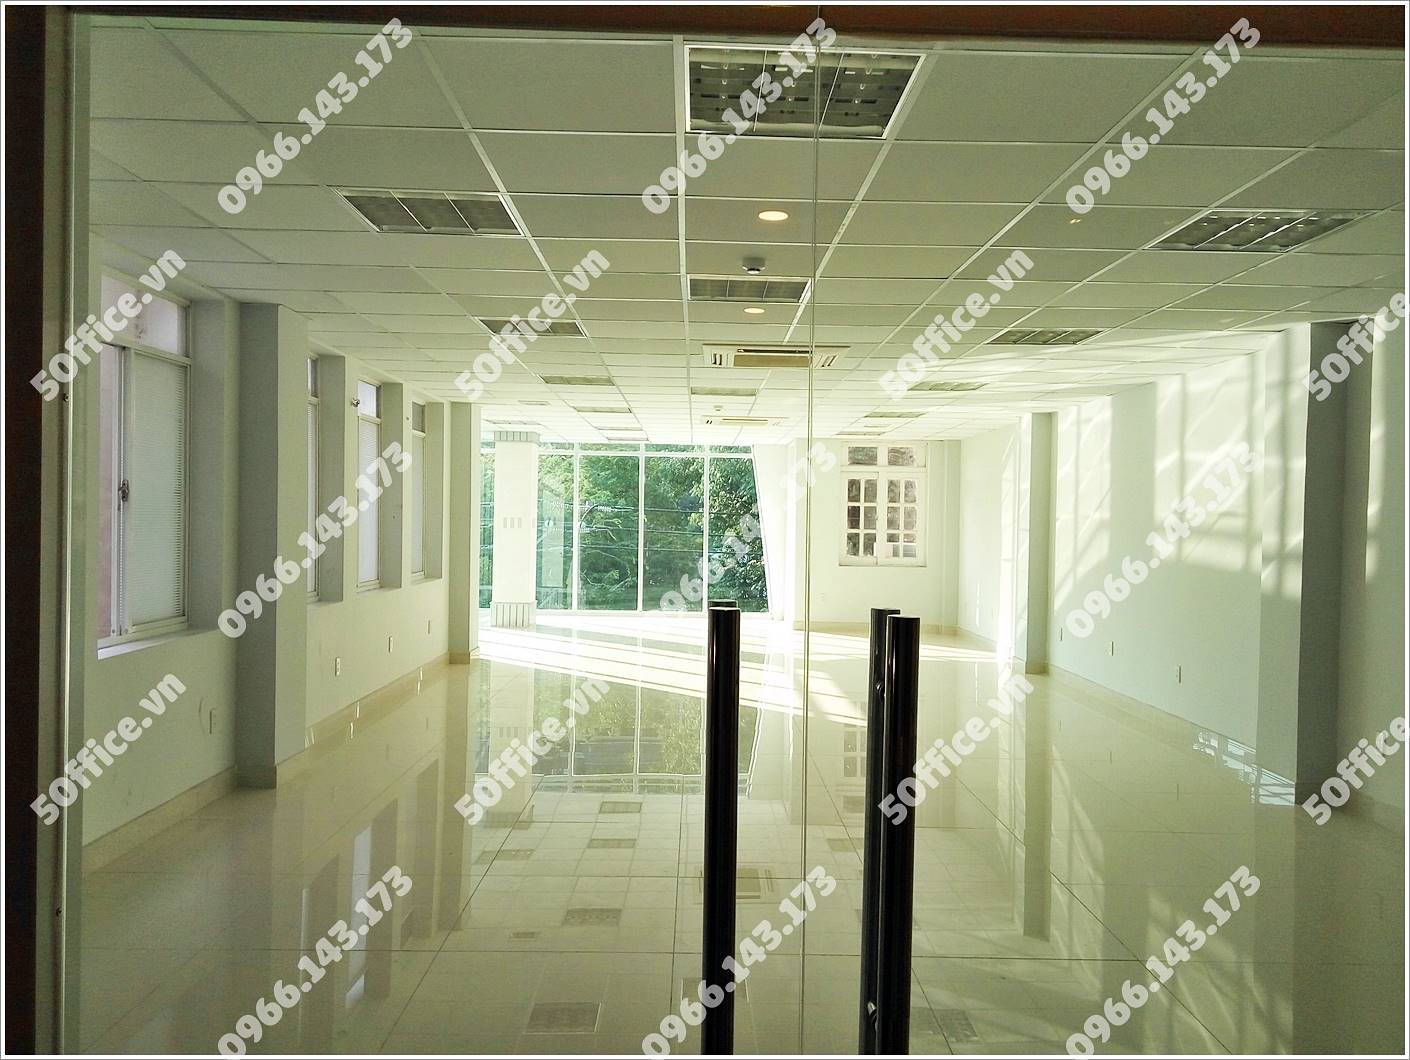 Cao ốc văn phòng cho thuê Mây Plaza Võ Văn Tần - vlook.vn